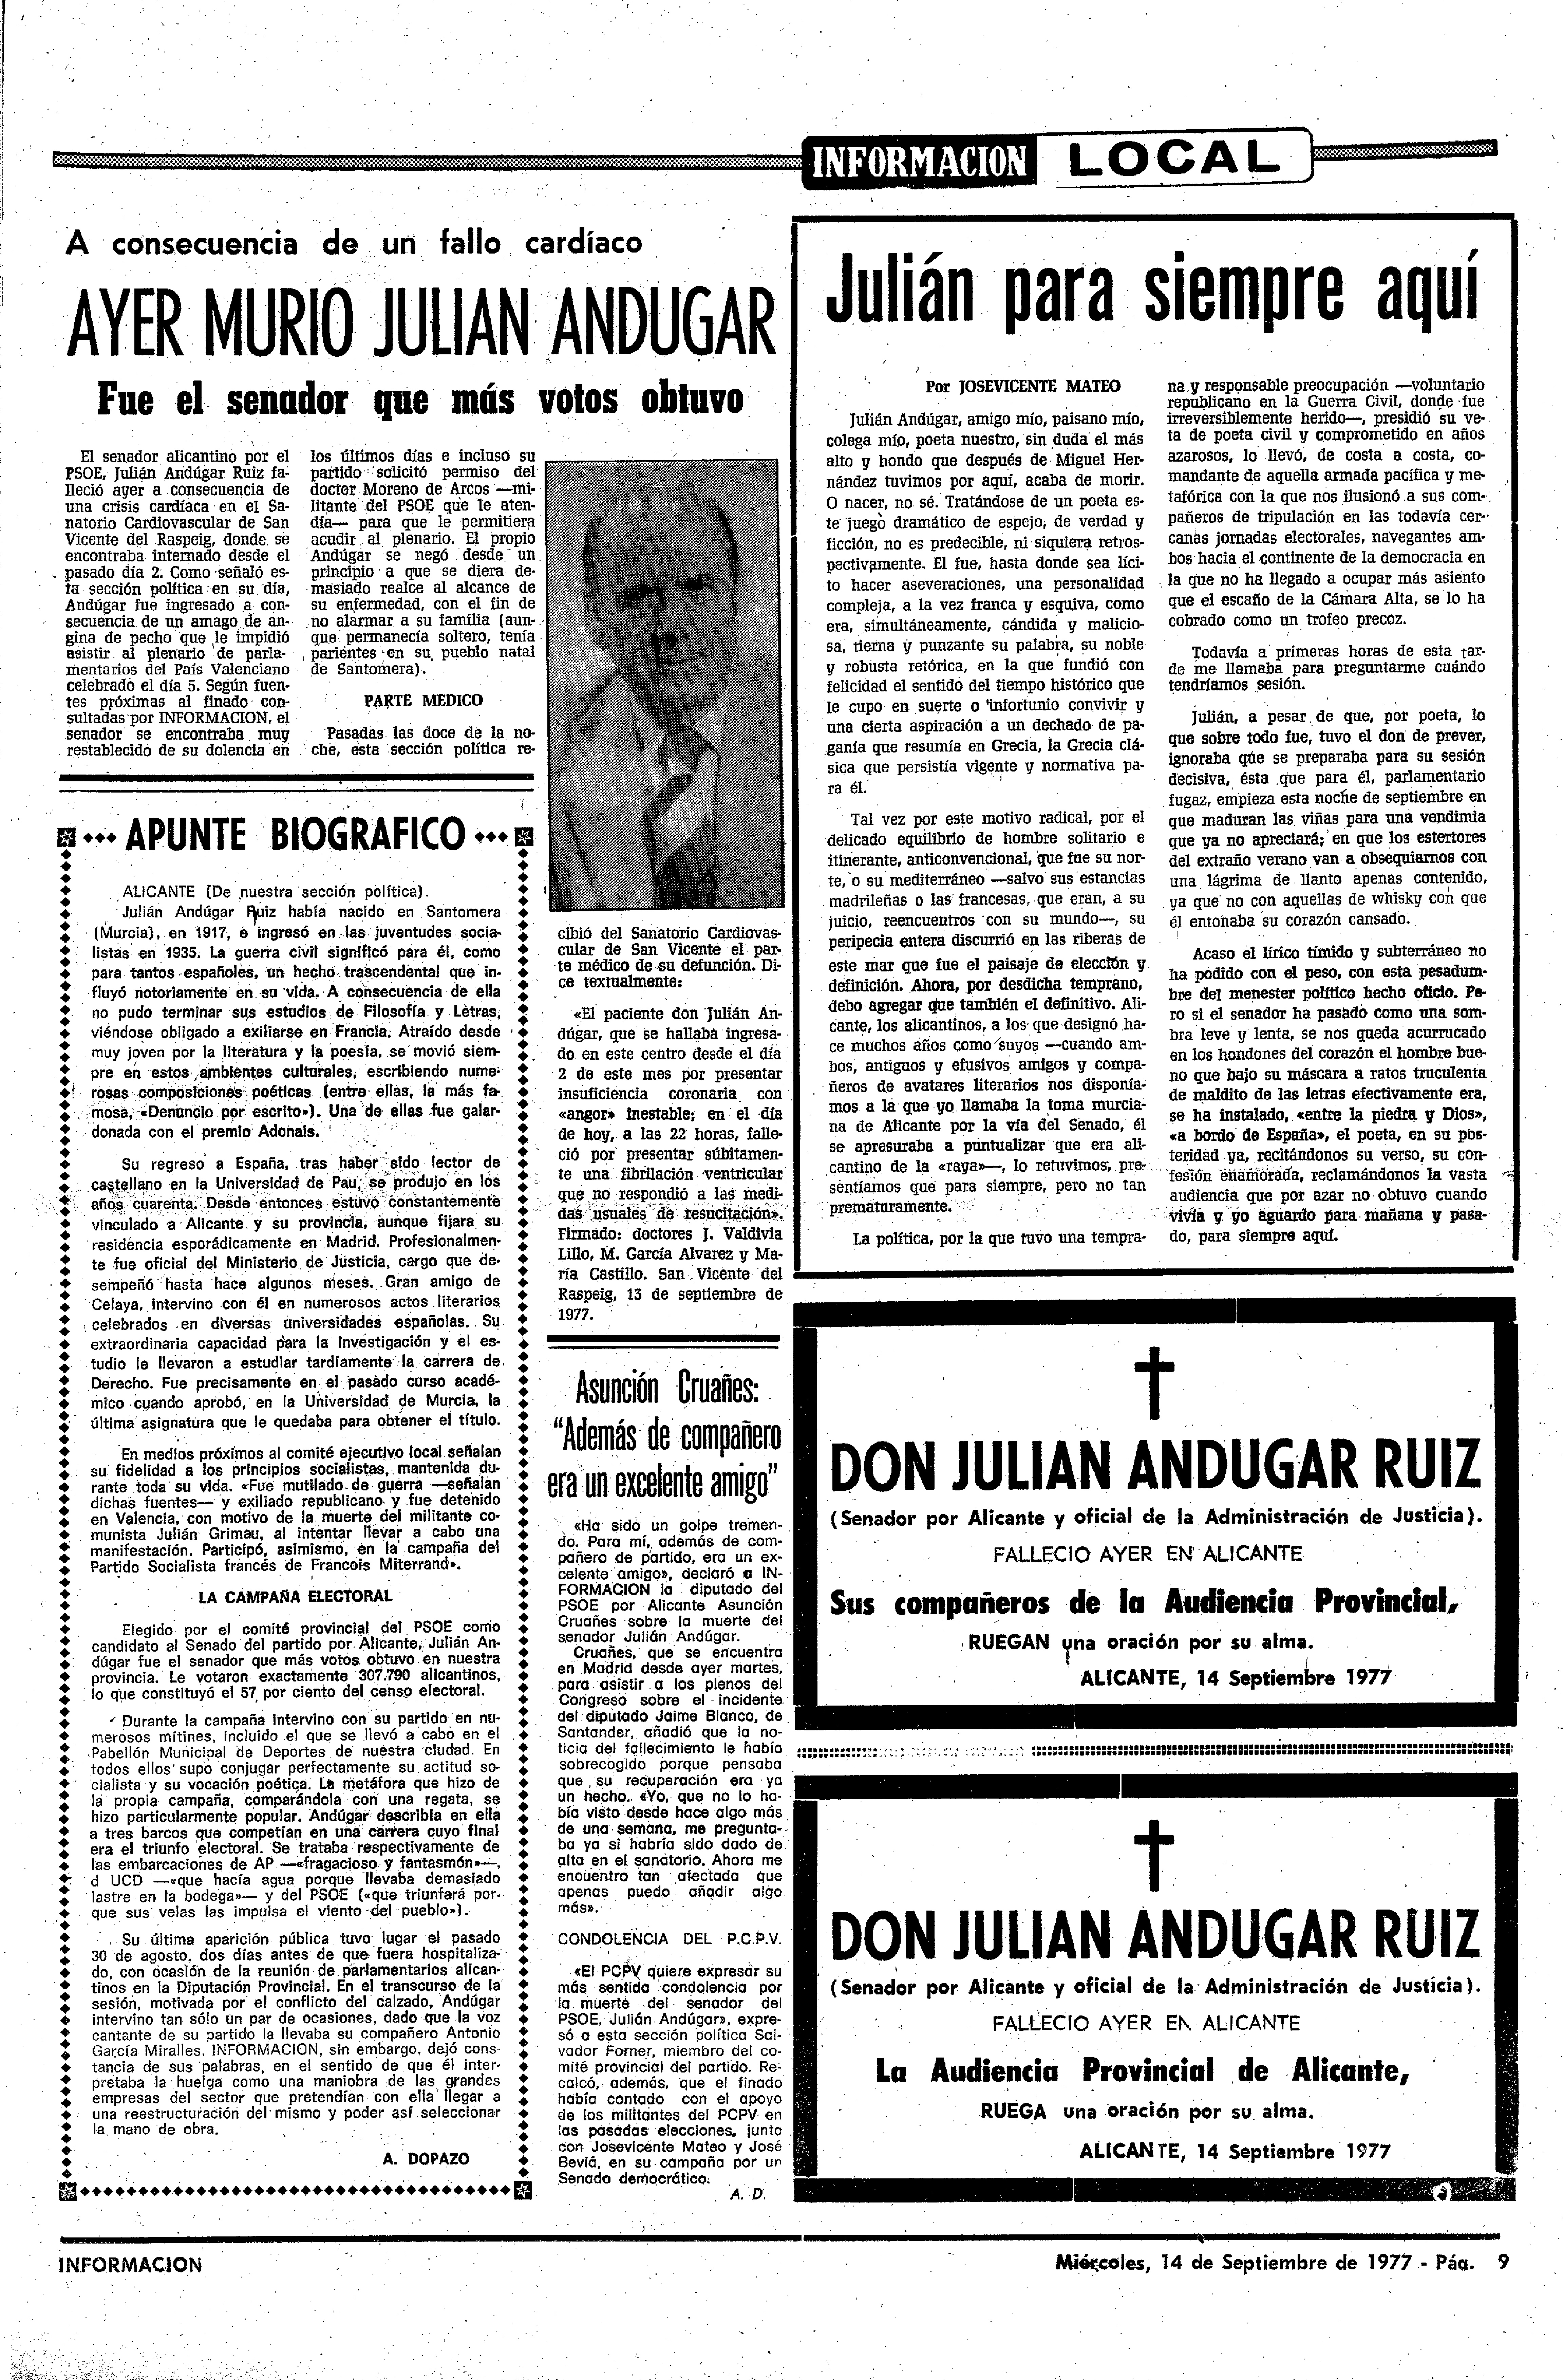 Ayer-murio-Julian-Andugar-Pagina-dedicada-en-periodico-Informacion-de-Alicante-1977-001 (1).jpg